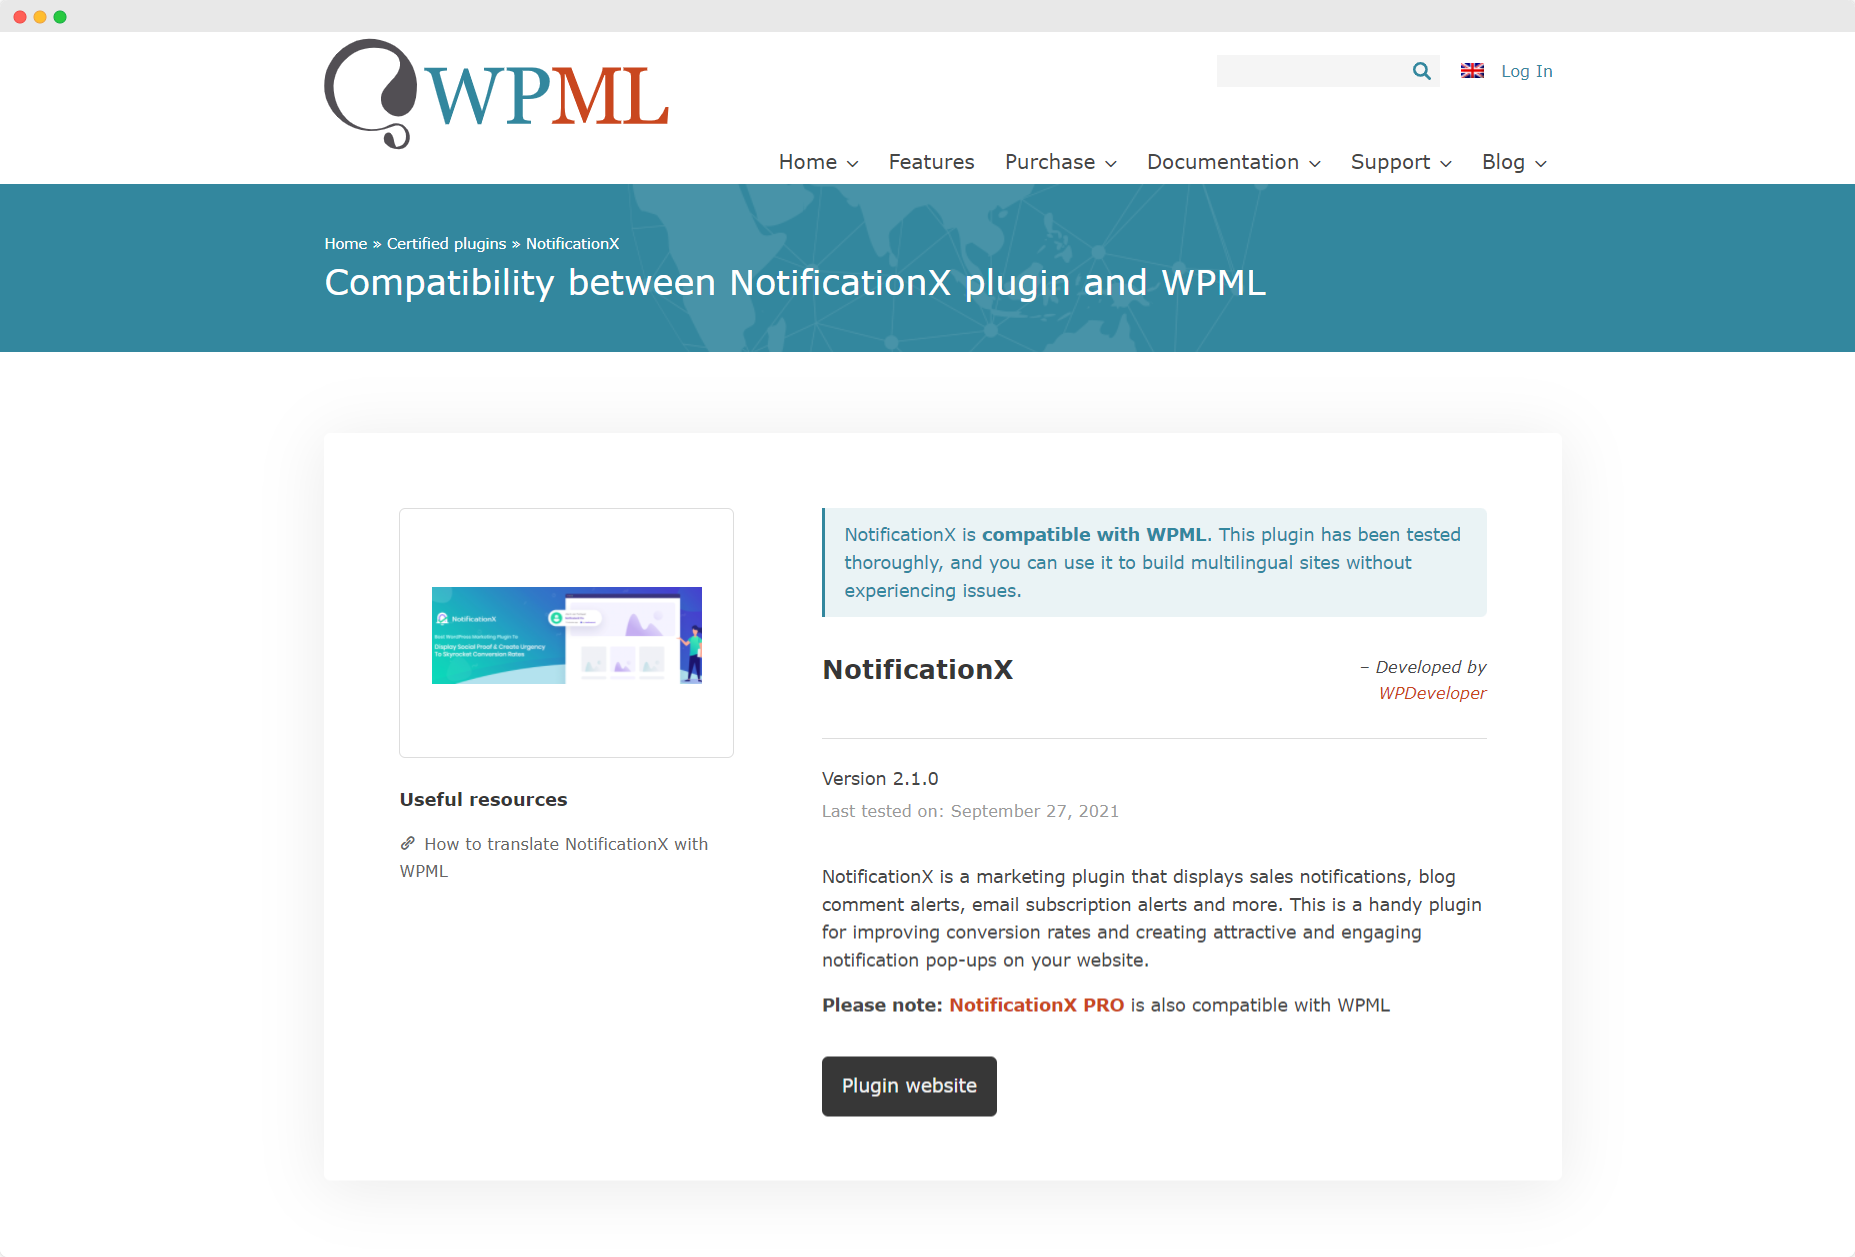 [НОВОЕ] NotificationX теперь совместим с WPML 1